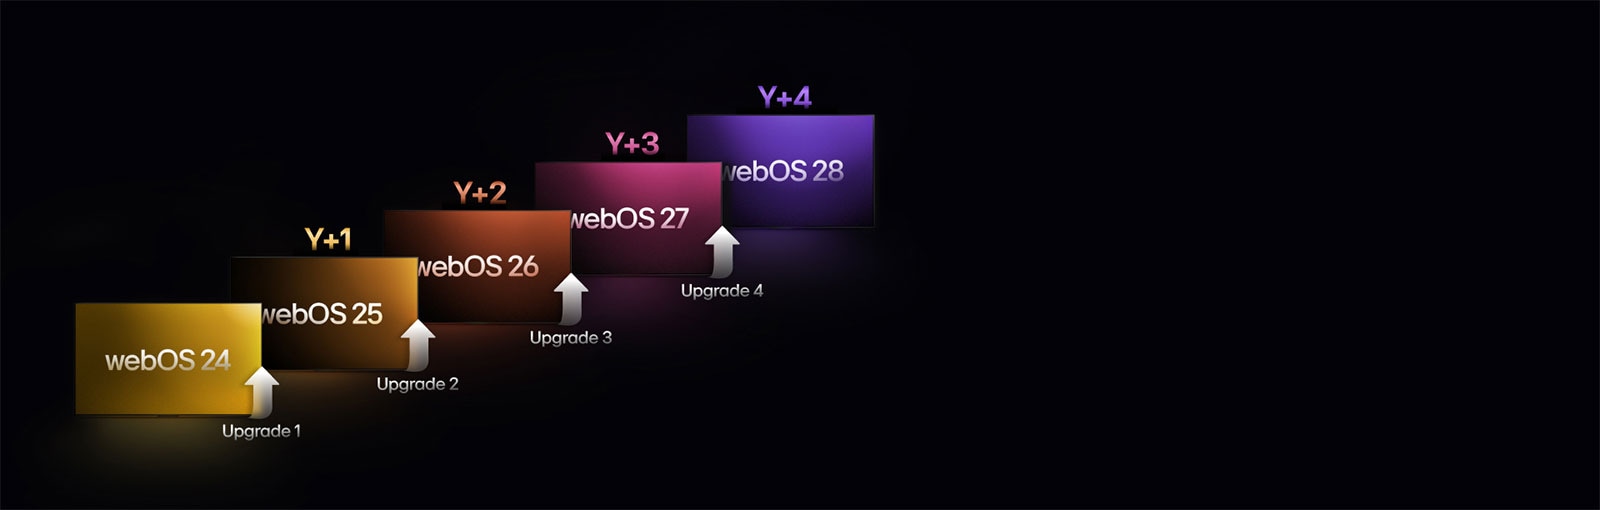 Năm hình chữ nhật có màu sắc khác nhau được xếp so le hướng lên trên, mỗi hình chữ nhật được gắn nhãn năm từ "webOS 24" đến "webOS 28". Mũi tên hướng lên nằm giữa các hình chữ nhật, được gắn nhãn từ "Nâng cấp 1" đến "Nâng cấp 4".